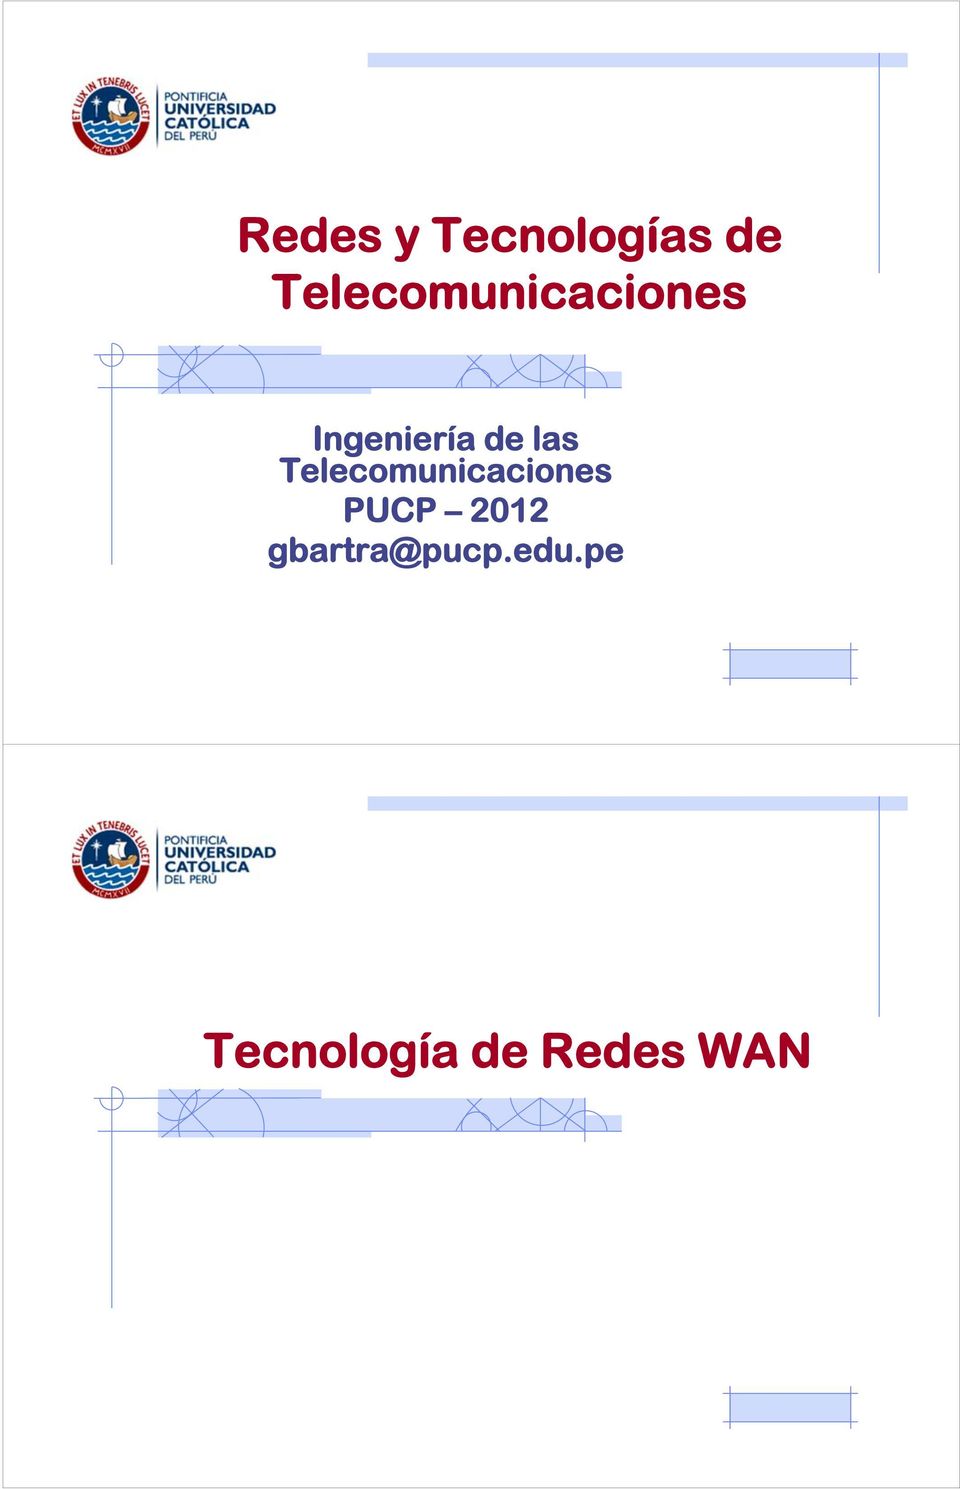 las Telecomunicaciones PUCP 2012